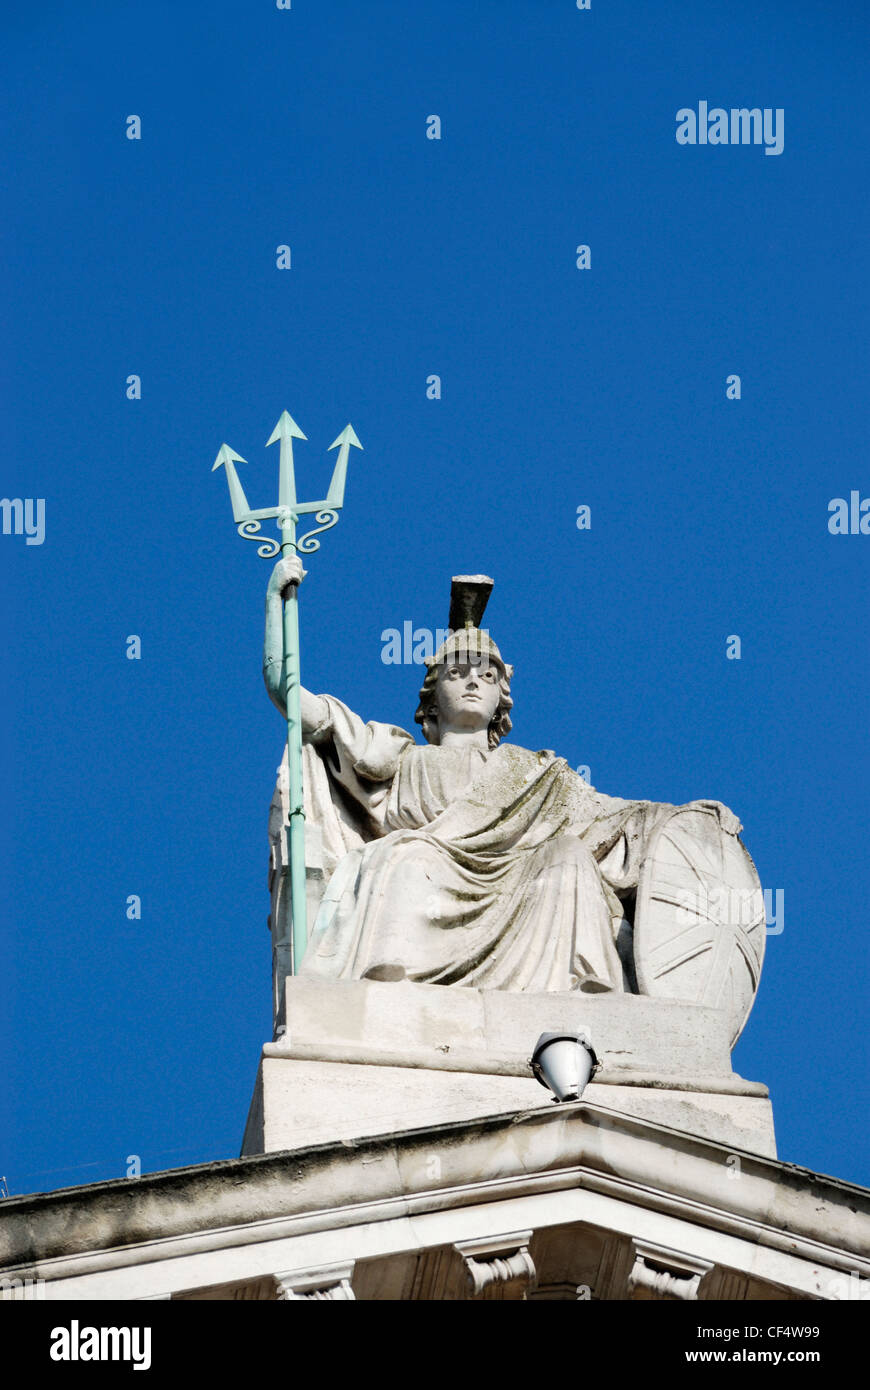 Statue de Britannia sur le dessus de la galerie d'art Tate Britain. Banque D'Images